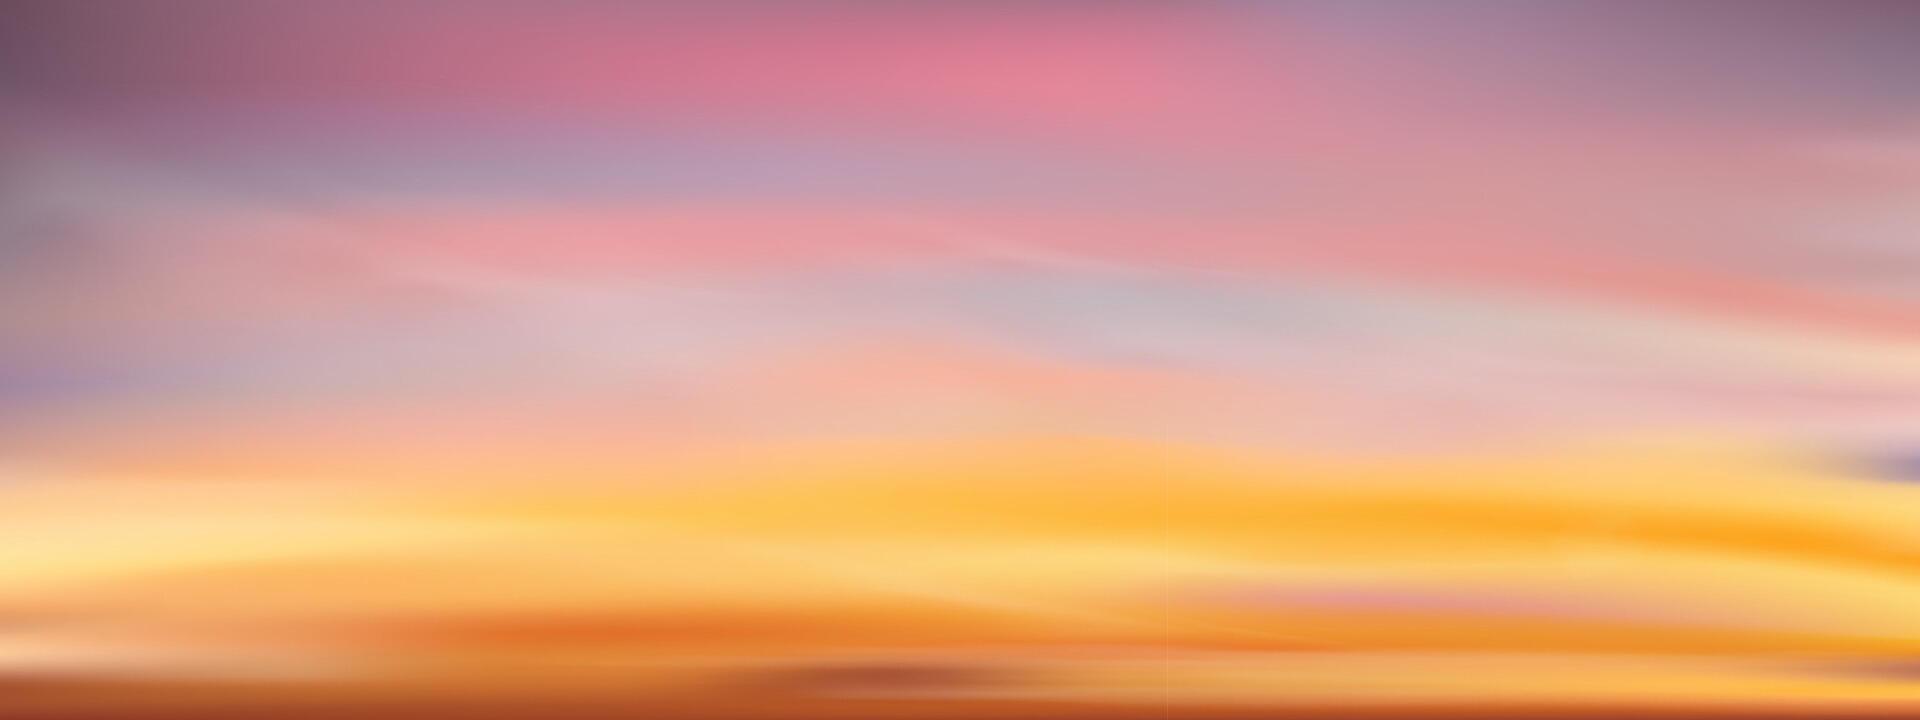 solnedgång himmel bakgrund, soluppgång moln orange, gul, rosa i morgon- sommar, vektor solig höst, natur landskap fält i kväll.vinter solljus, tecknad film illustration horisont vår solnedgång förbi hav strand